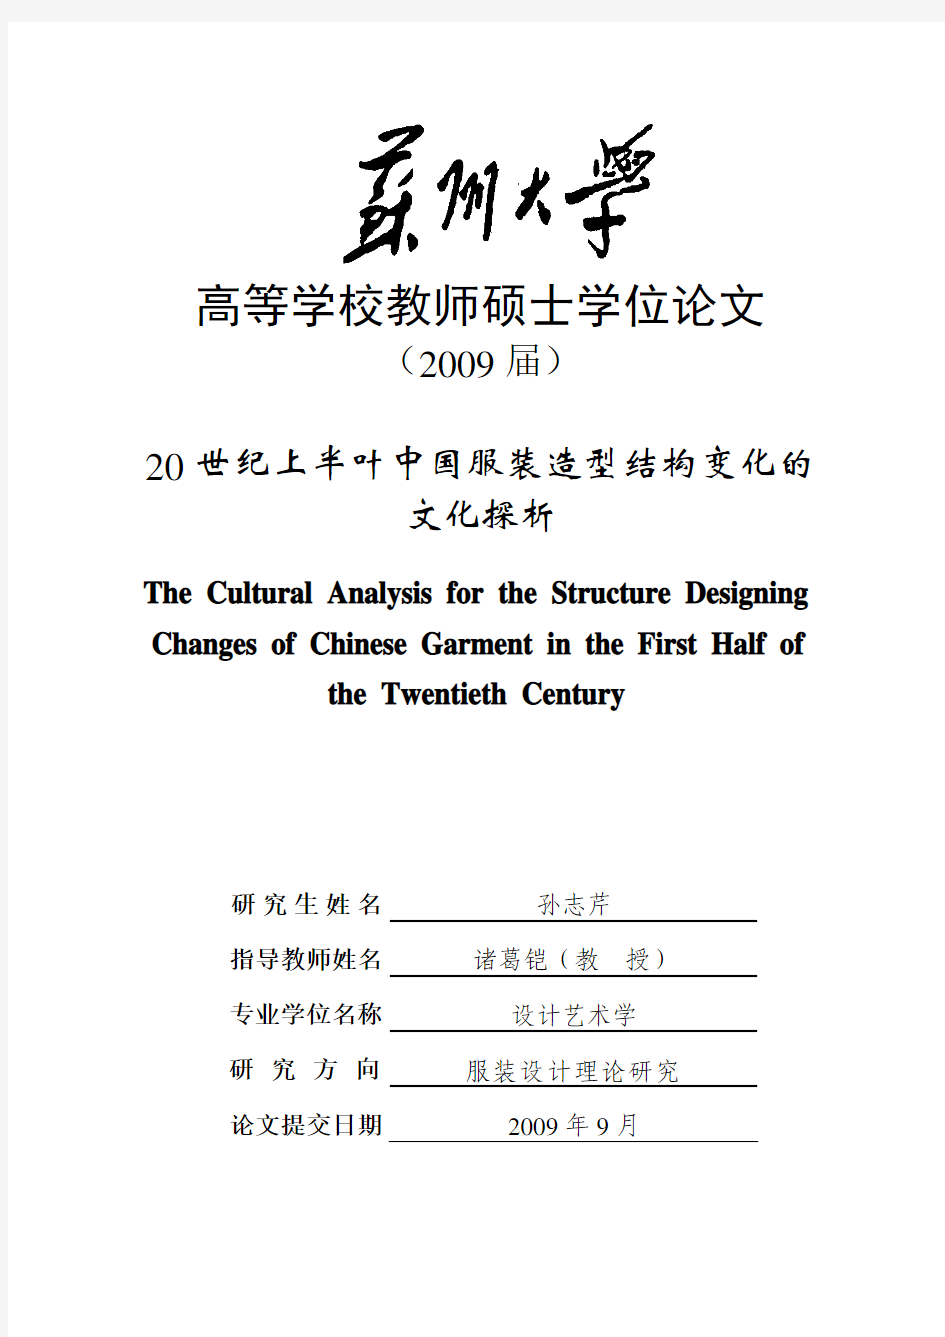 20 世纪上半叶中国服装造型结构变化的文化探析